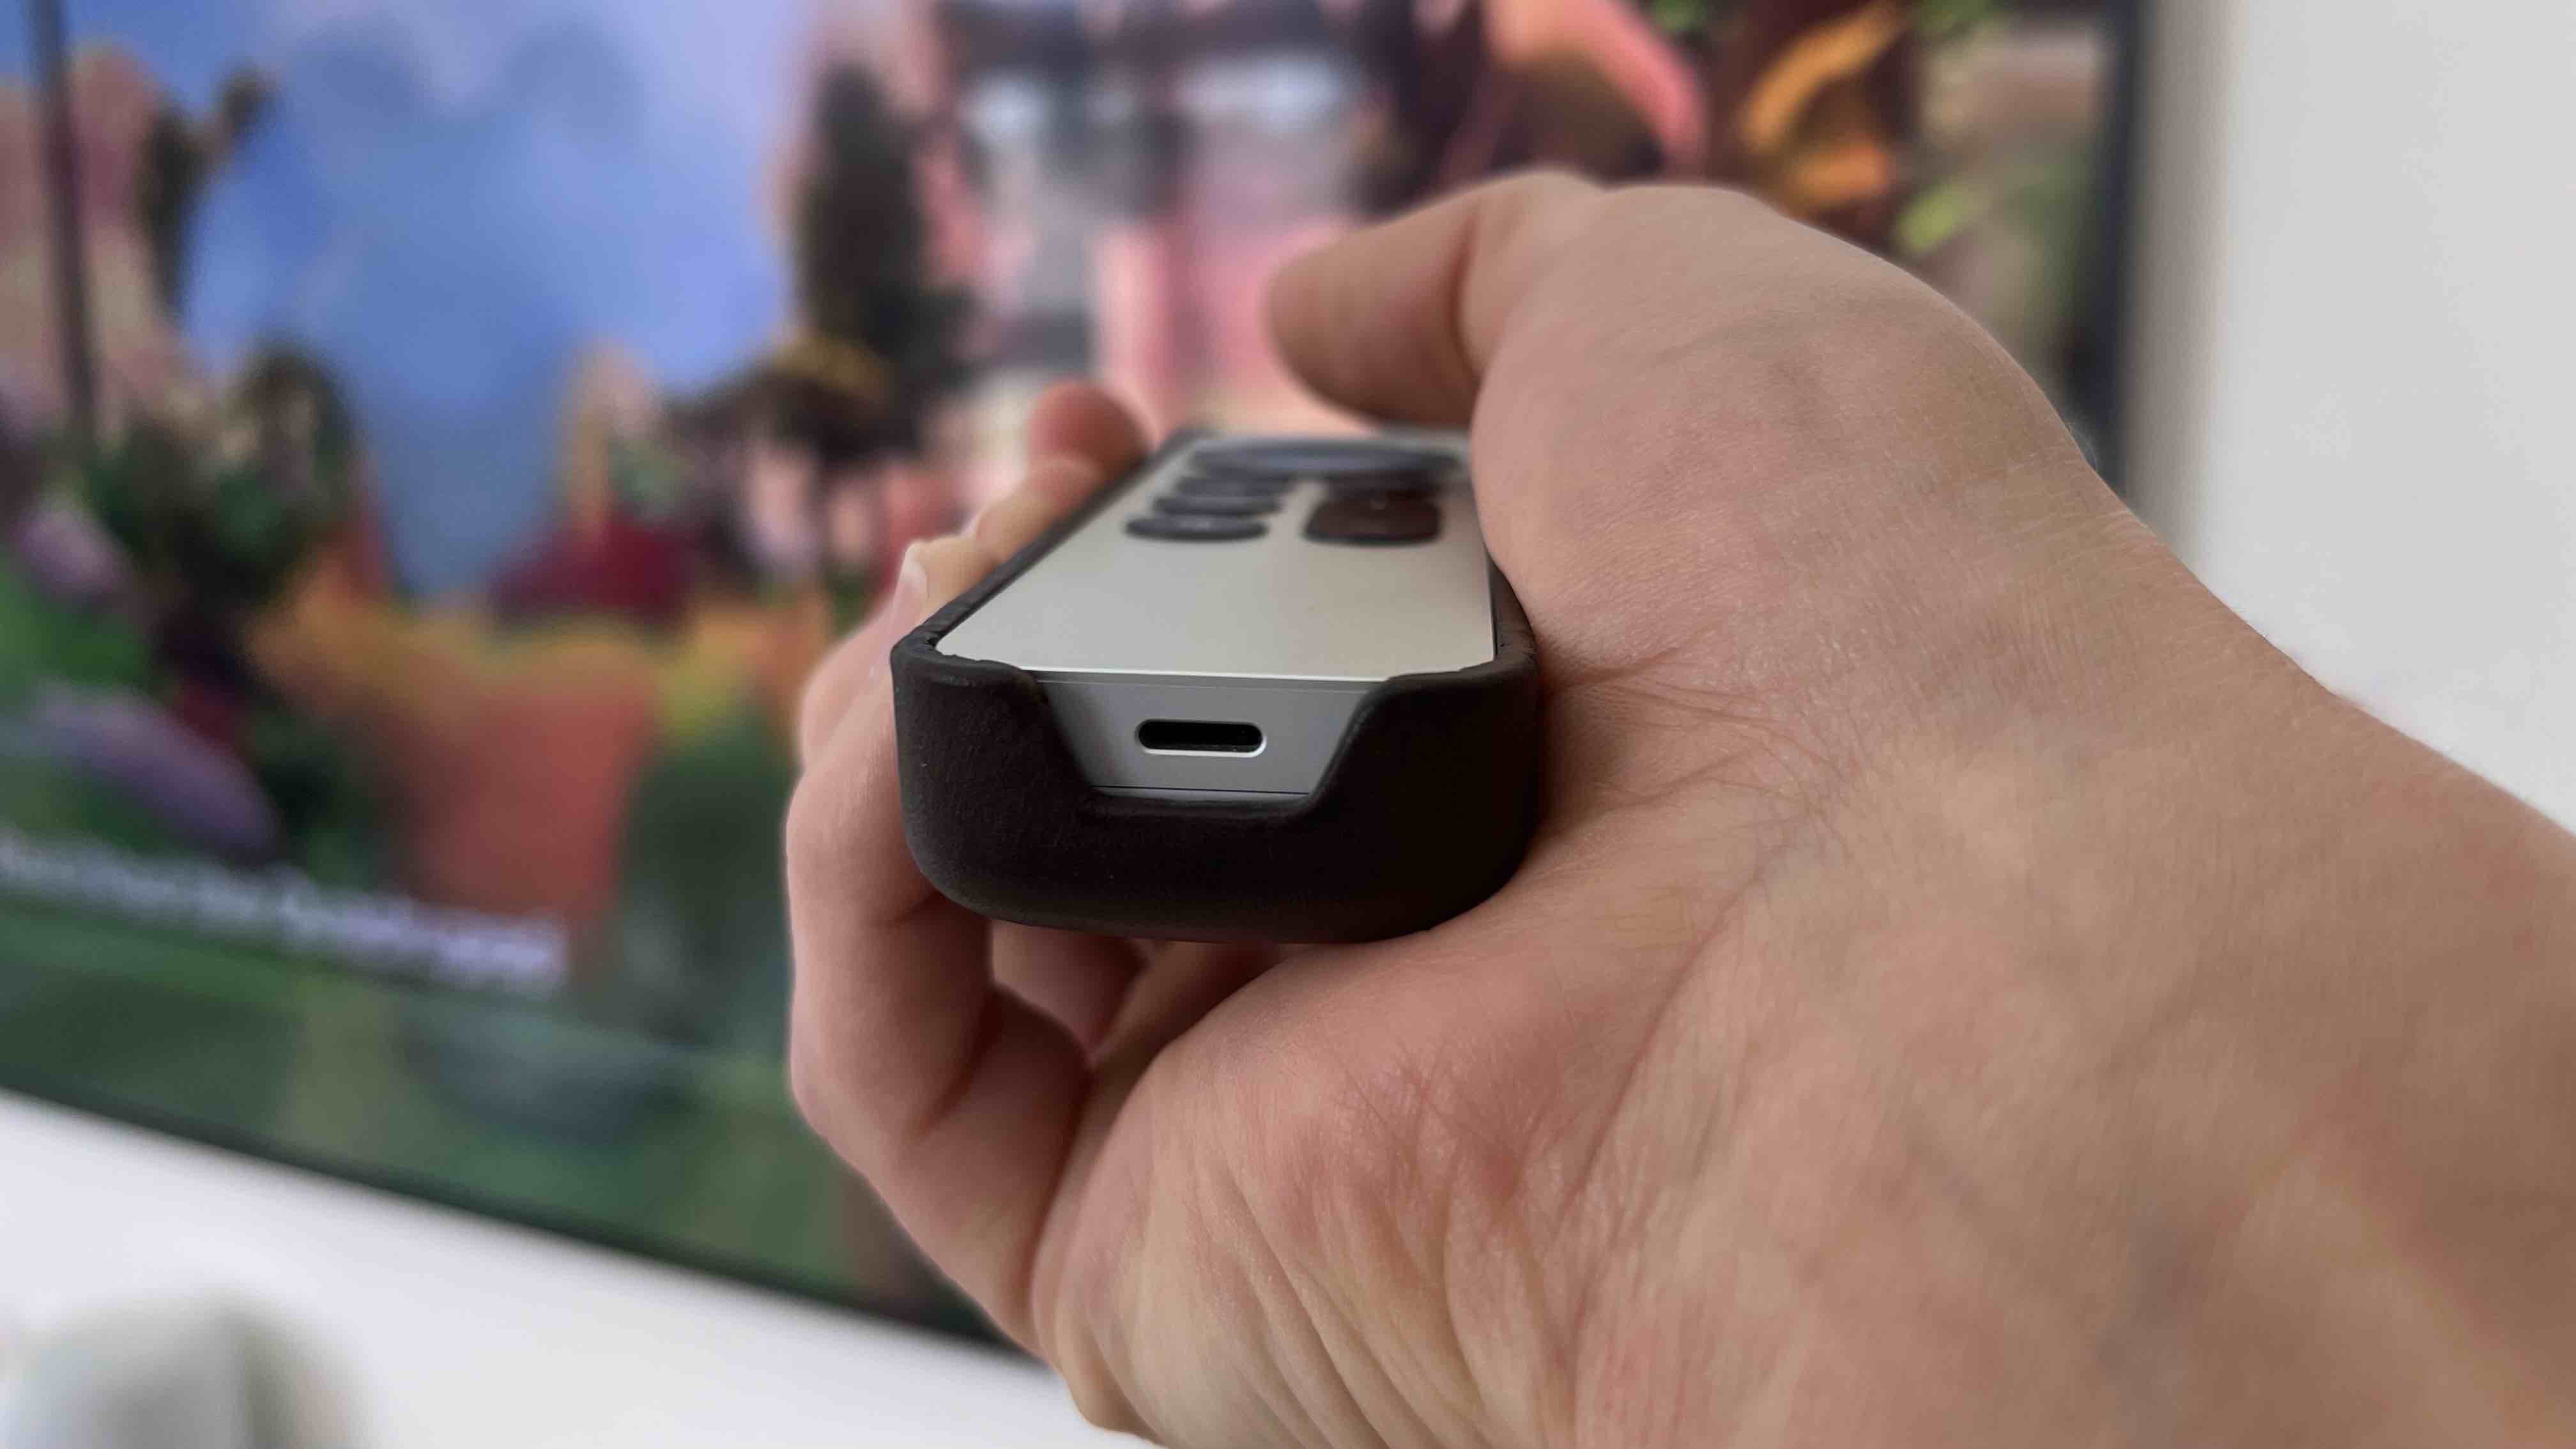 Кожаный чехол для пульта Apple TV Remote в руке